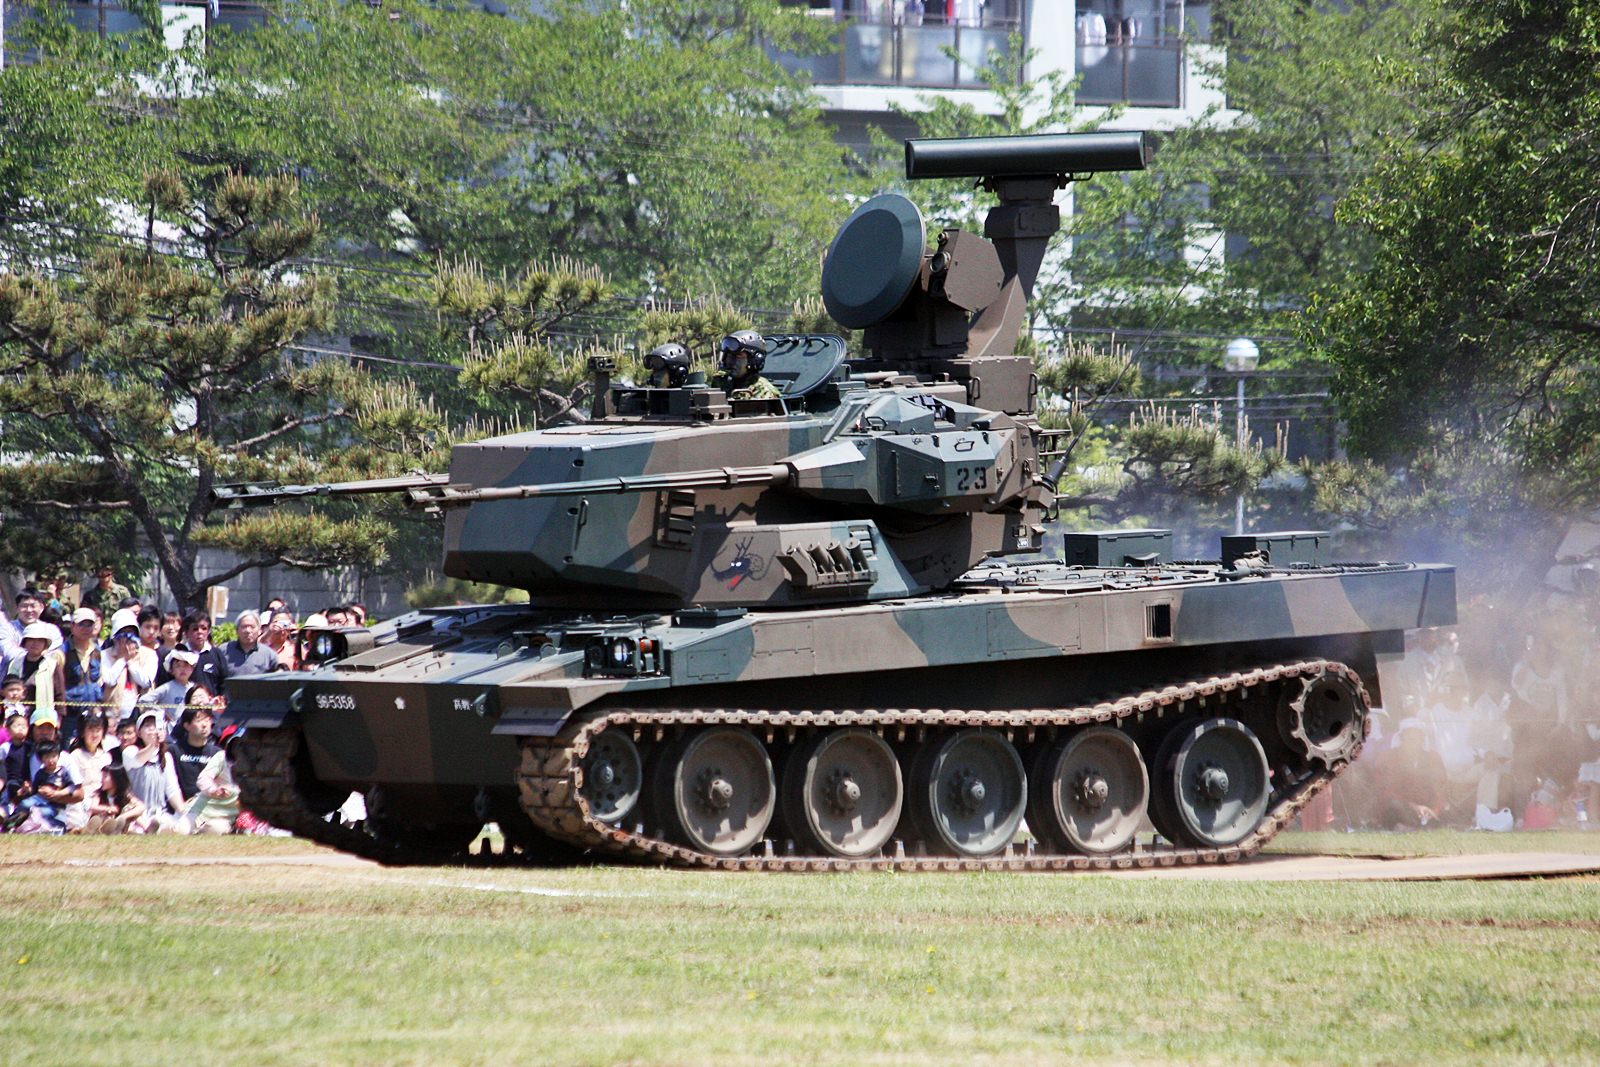 Япония военная помощь. ЗСУ Type 87. Тип 87 ЗСУ. ЗСУ Type 80. Тип 80 ЗСУ.